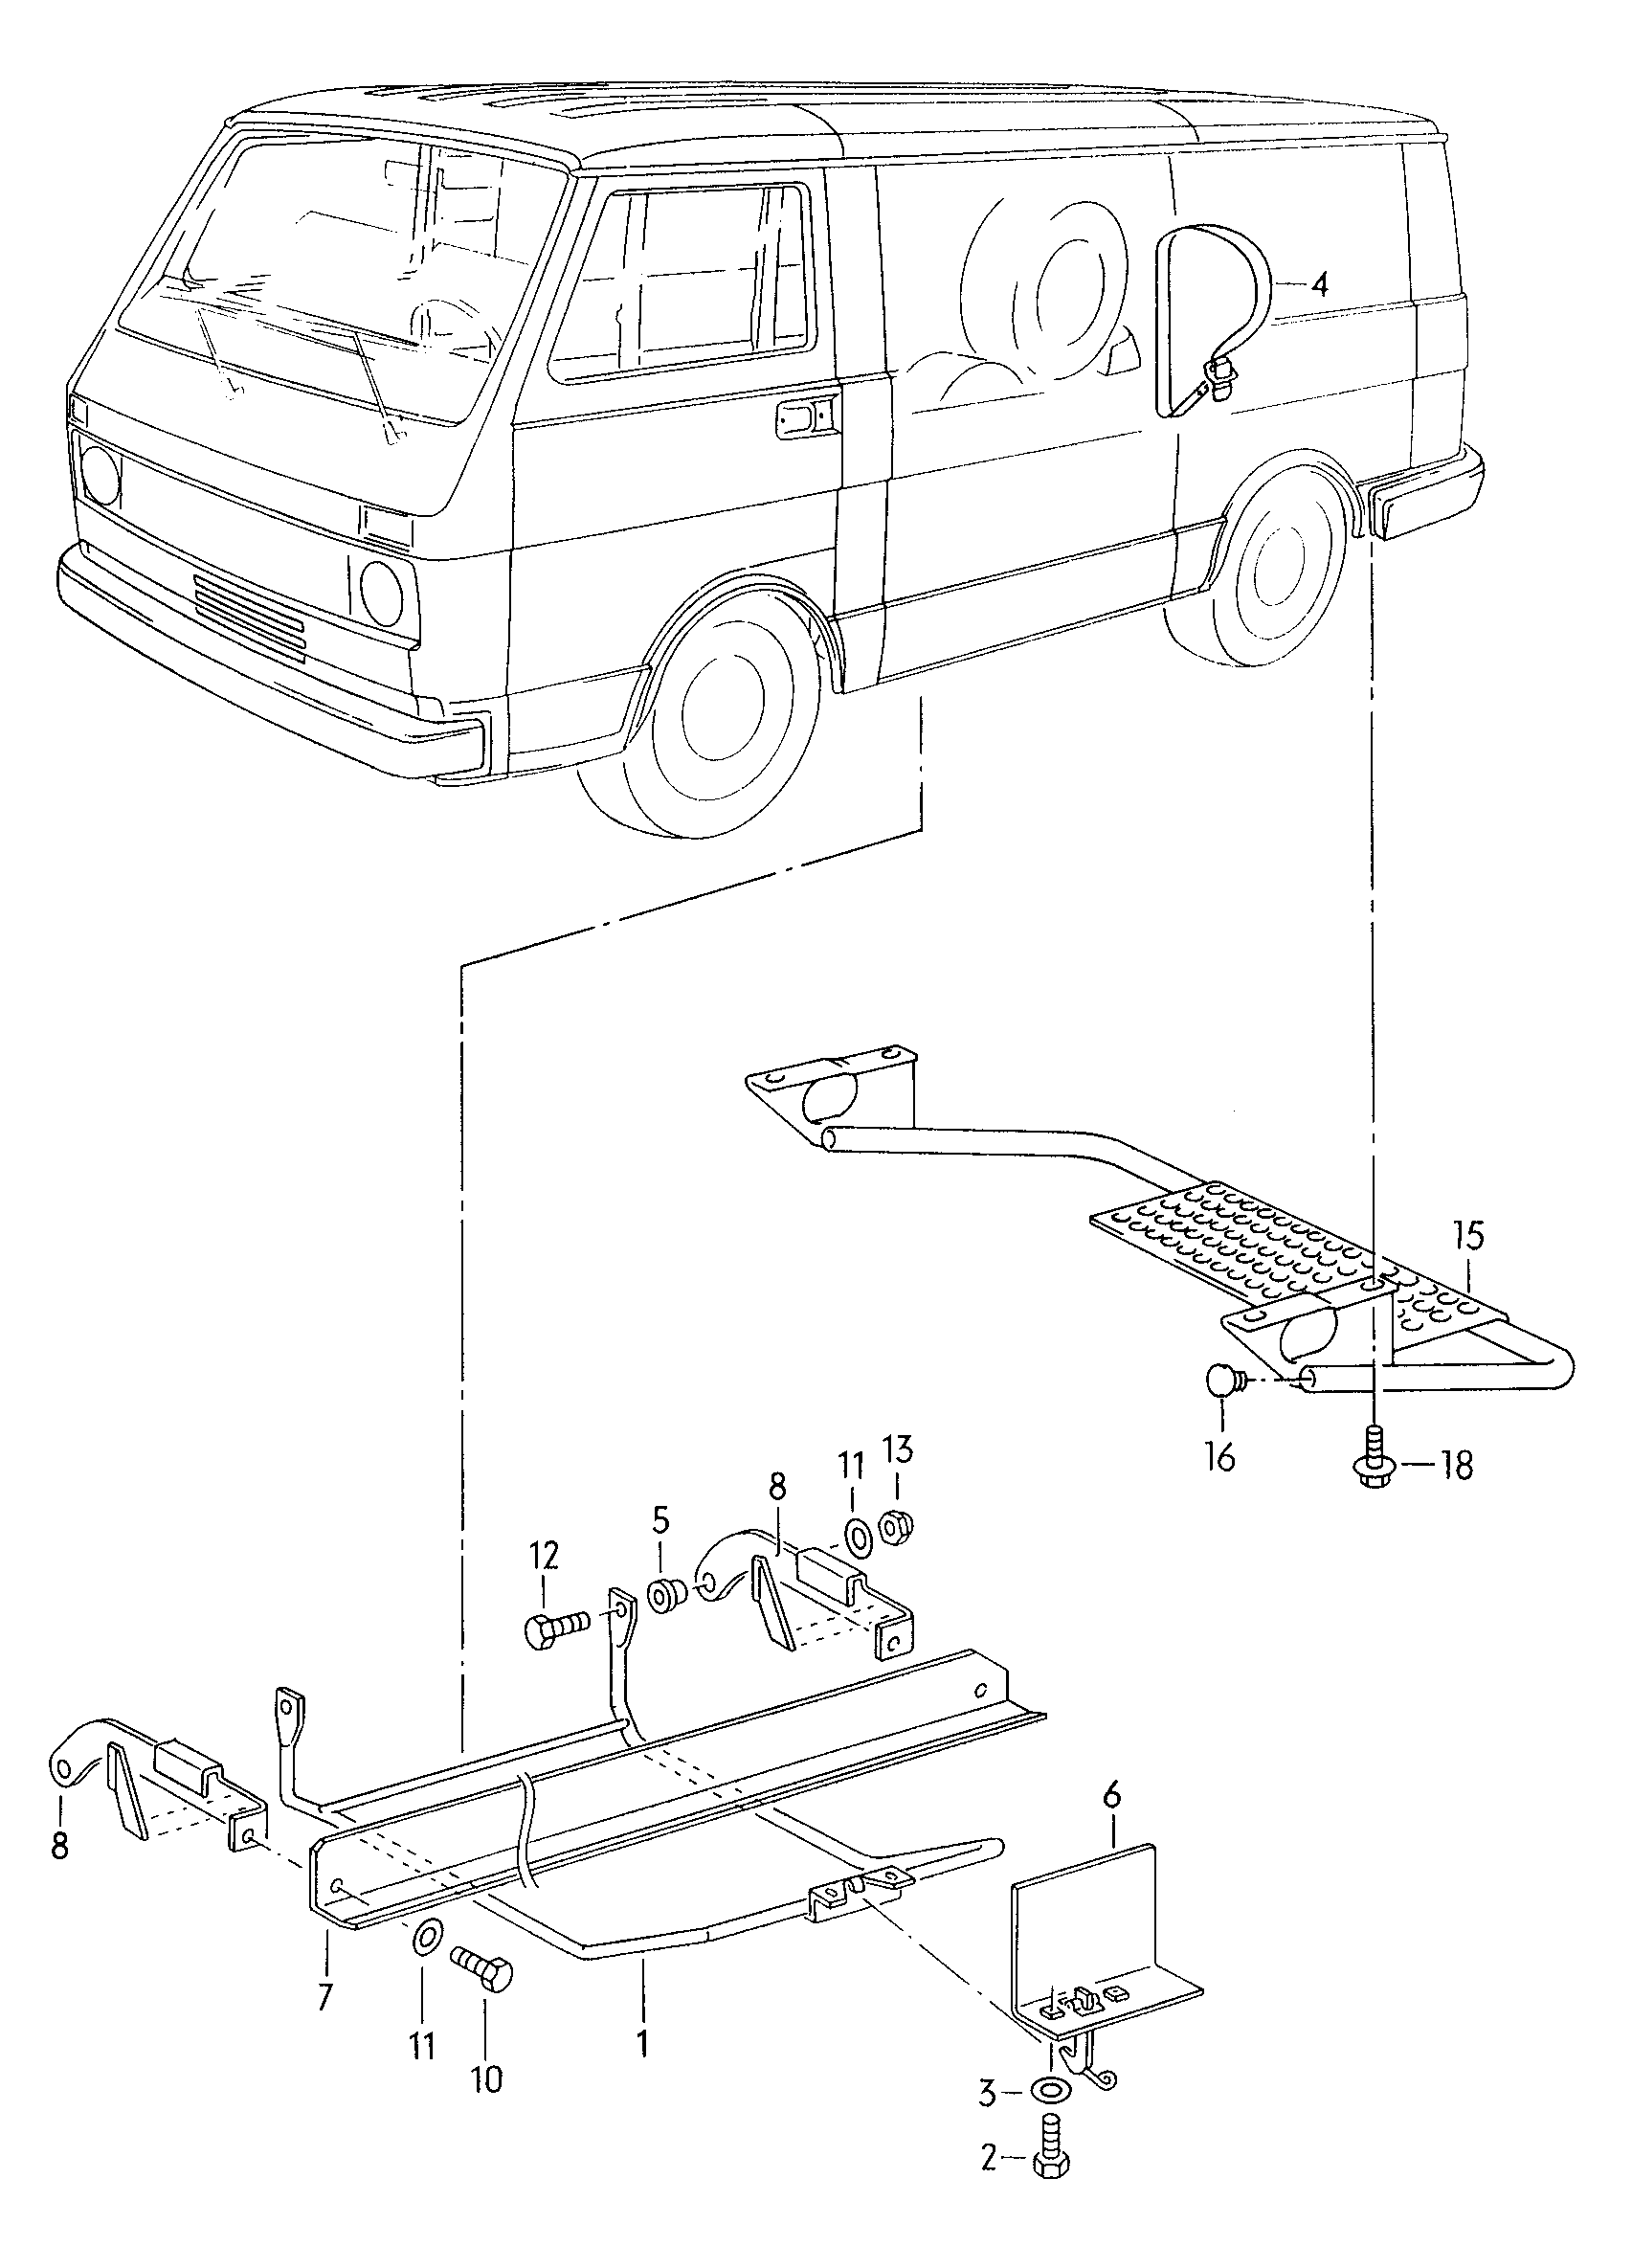 fijacion rueda repuesto furgonkombi - LT, LT 4x4 - lt